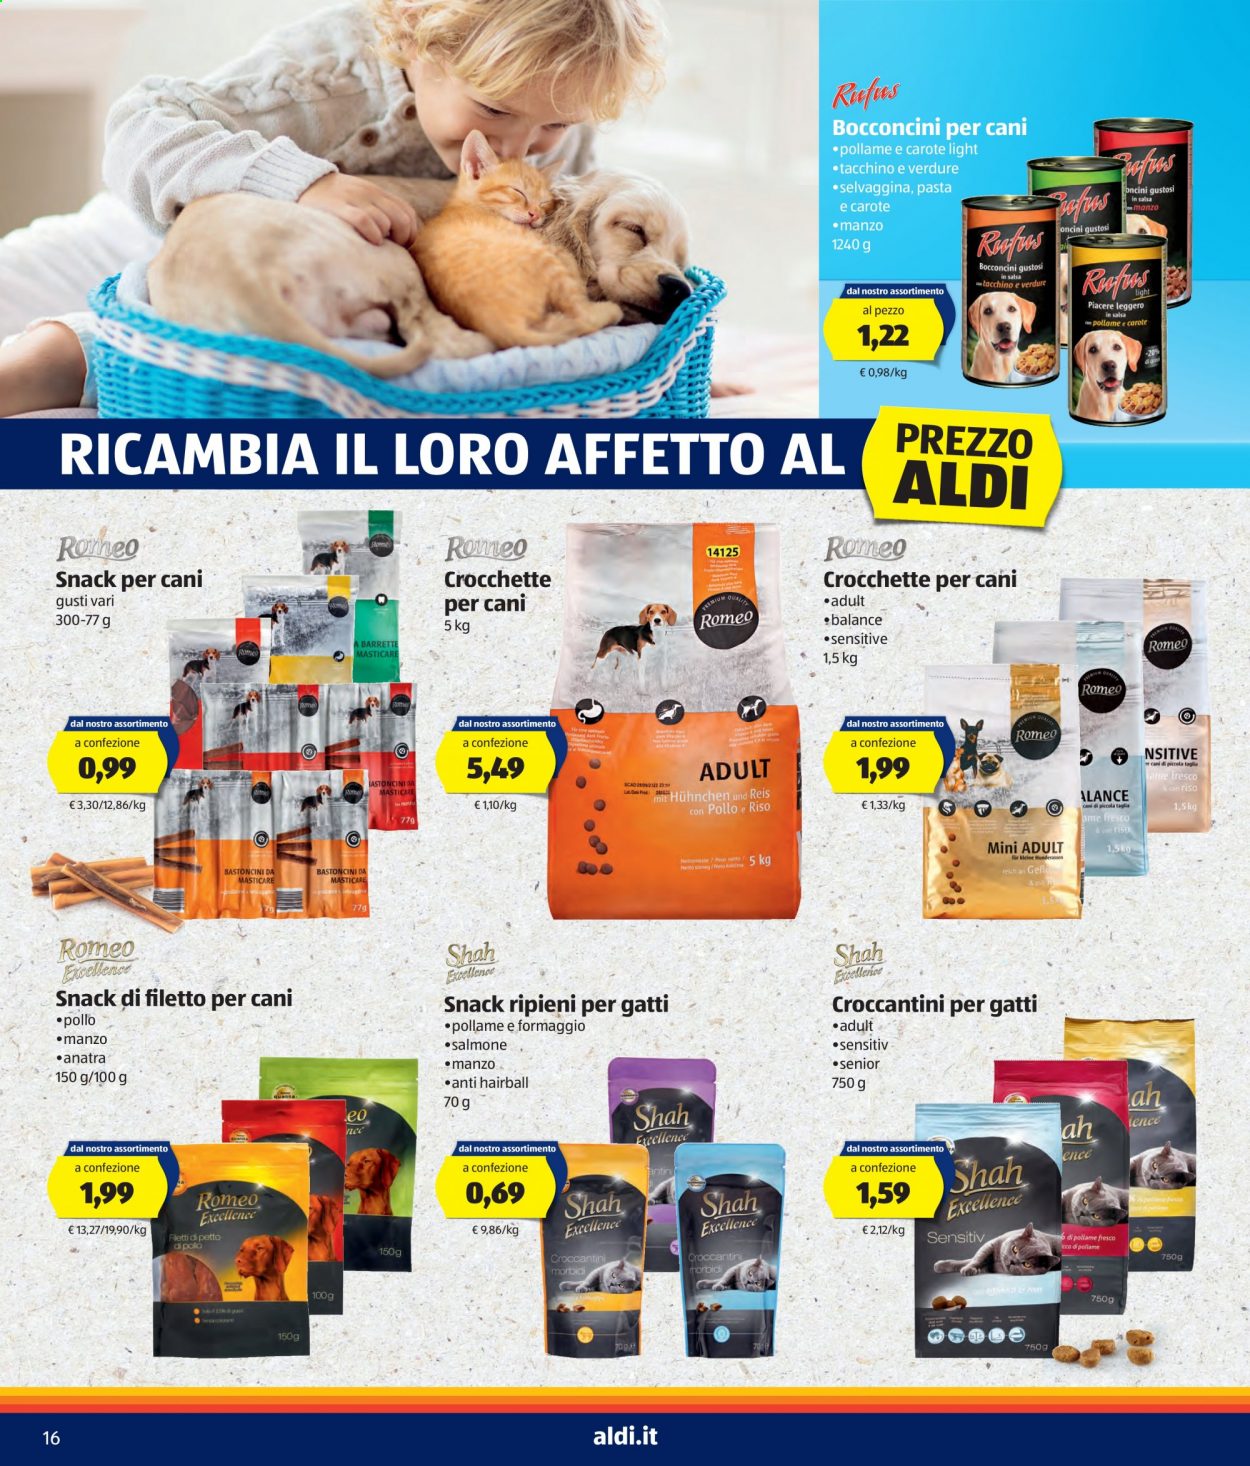 thumbnail - Volantino Aldi - 3/5/2021 - 9/5/2021 - Prodotti in offerta - croccantini per gatti, crocchette cane, bocconcini per cane, snack per cane. Pagina 16.